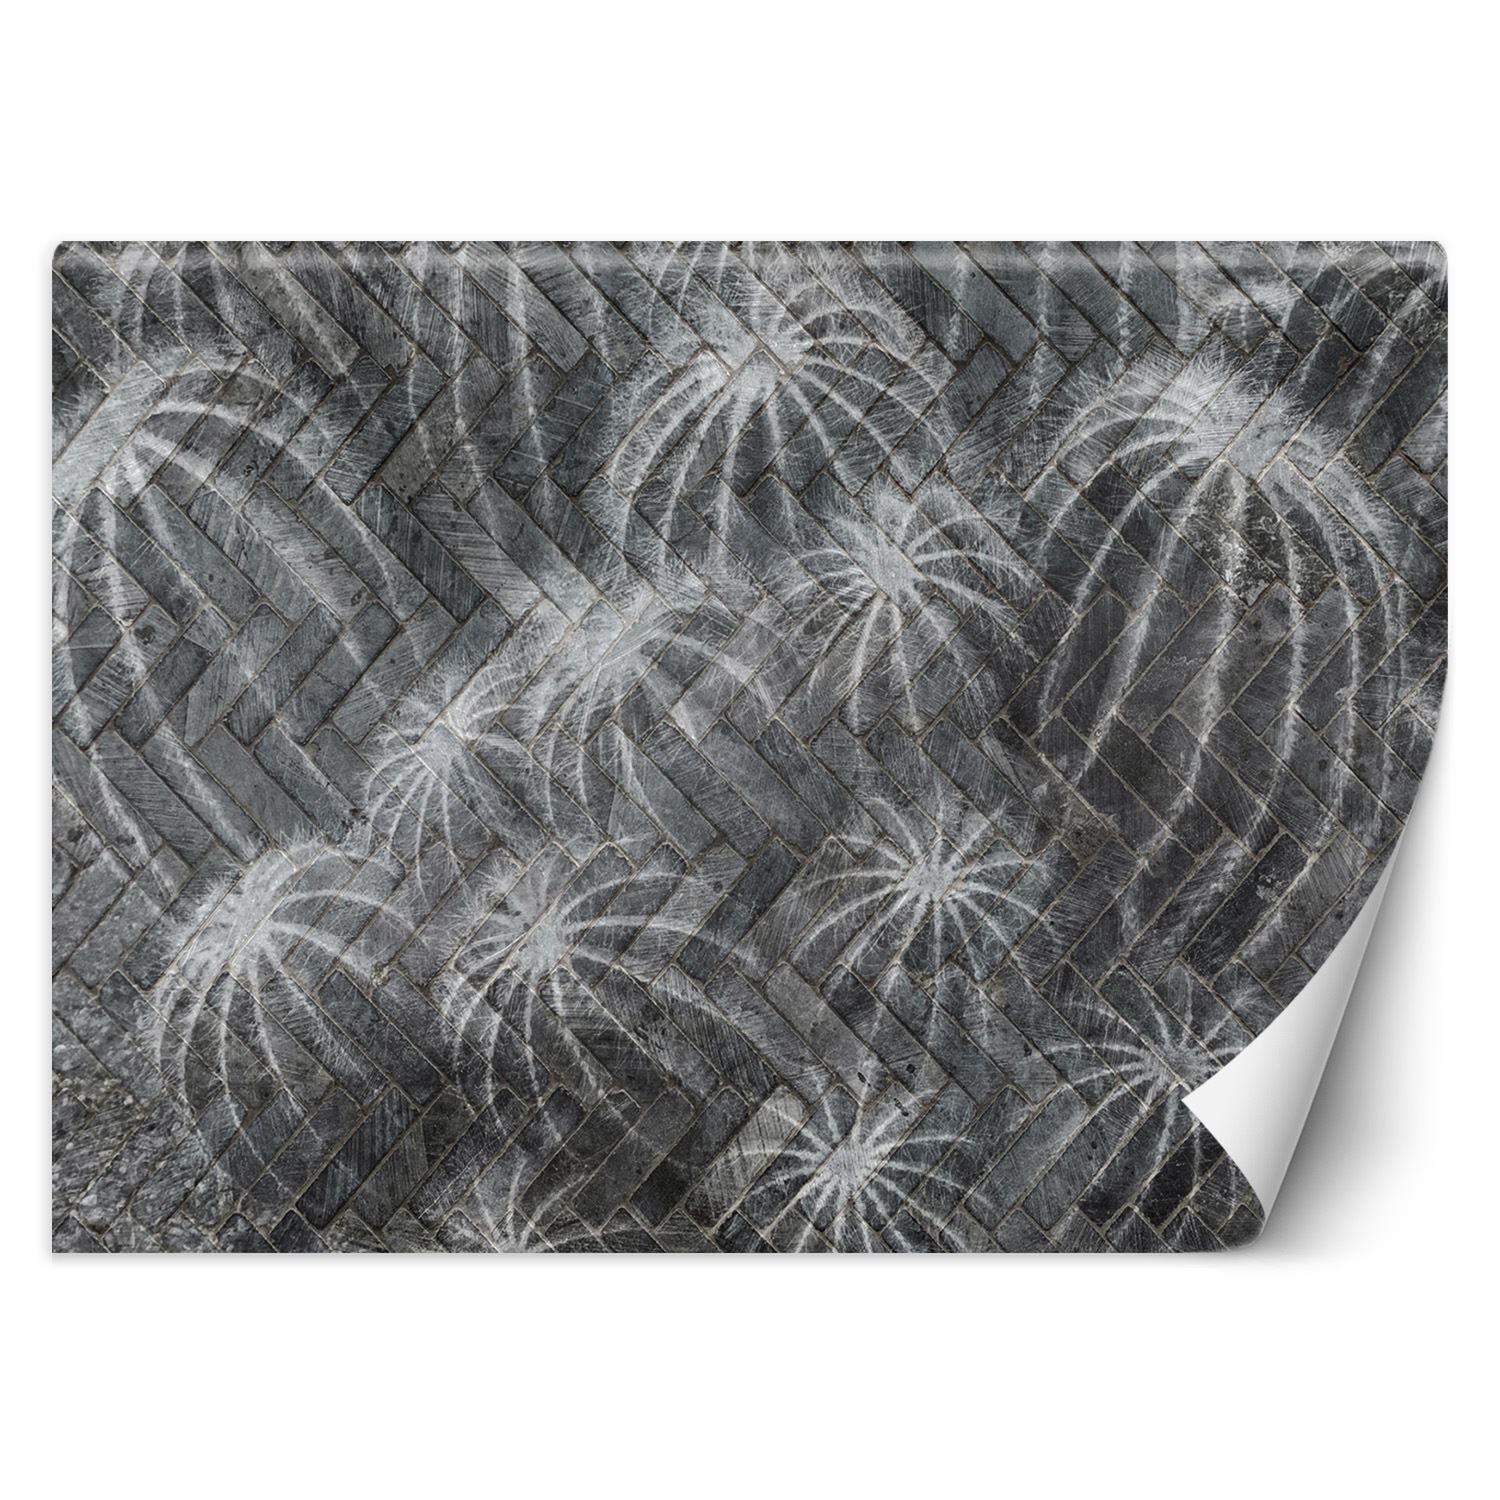 Trend24 – Behang – Cactussen In Grijs – Behangpapier – Behang Woonkamer – Fotobehang – 450×315 cm – Incl. behanglijm